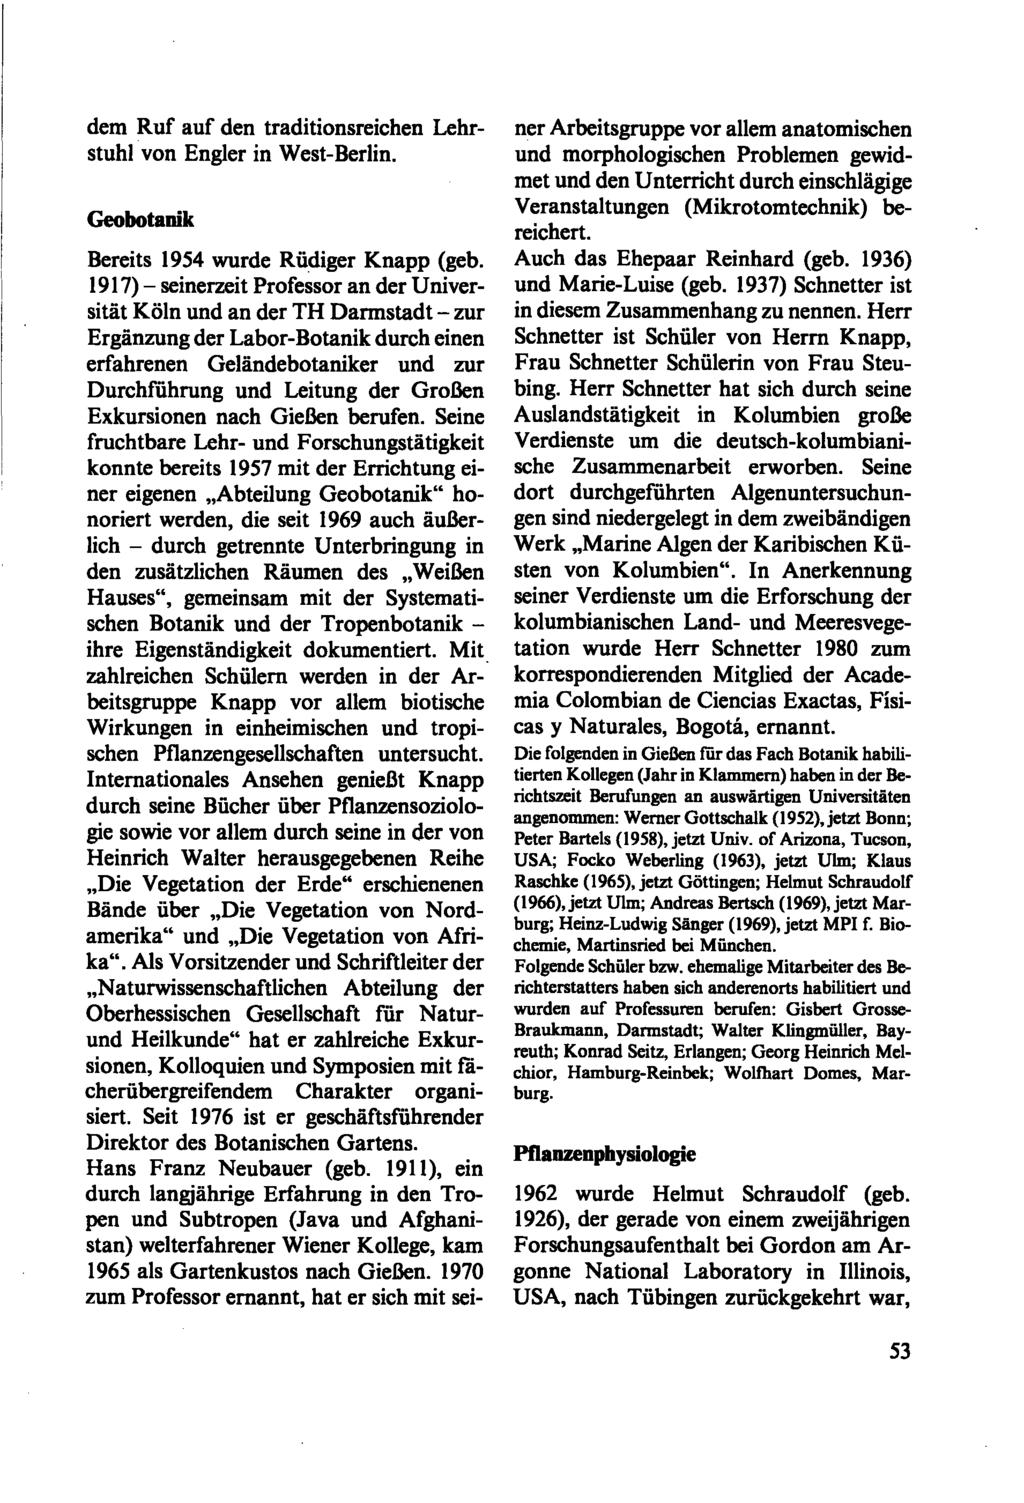 dem Ruf auf den traditionsreichen Lehrstuhl von Engler in West-Berlin. Geobotanik Bereits 1954 wurde Rüdiger Knapp (geb.